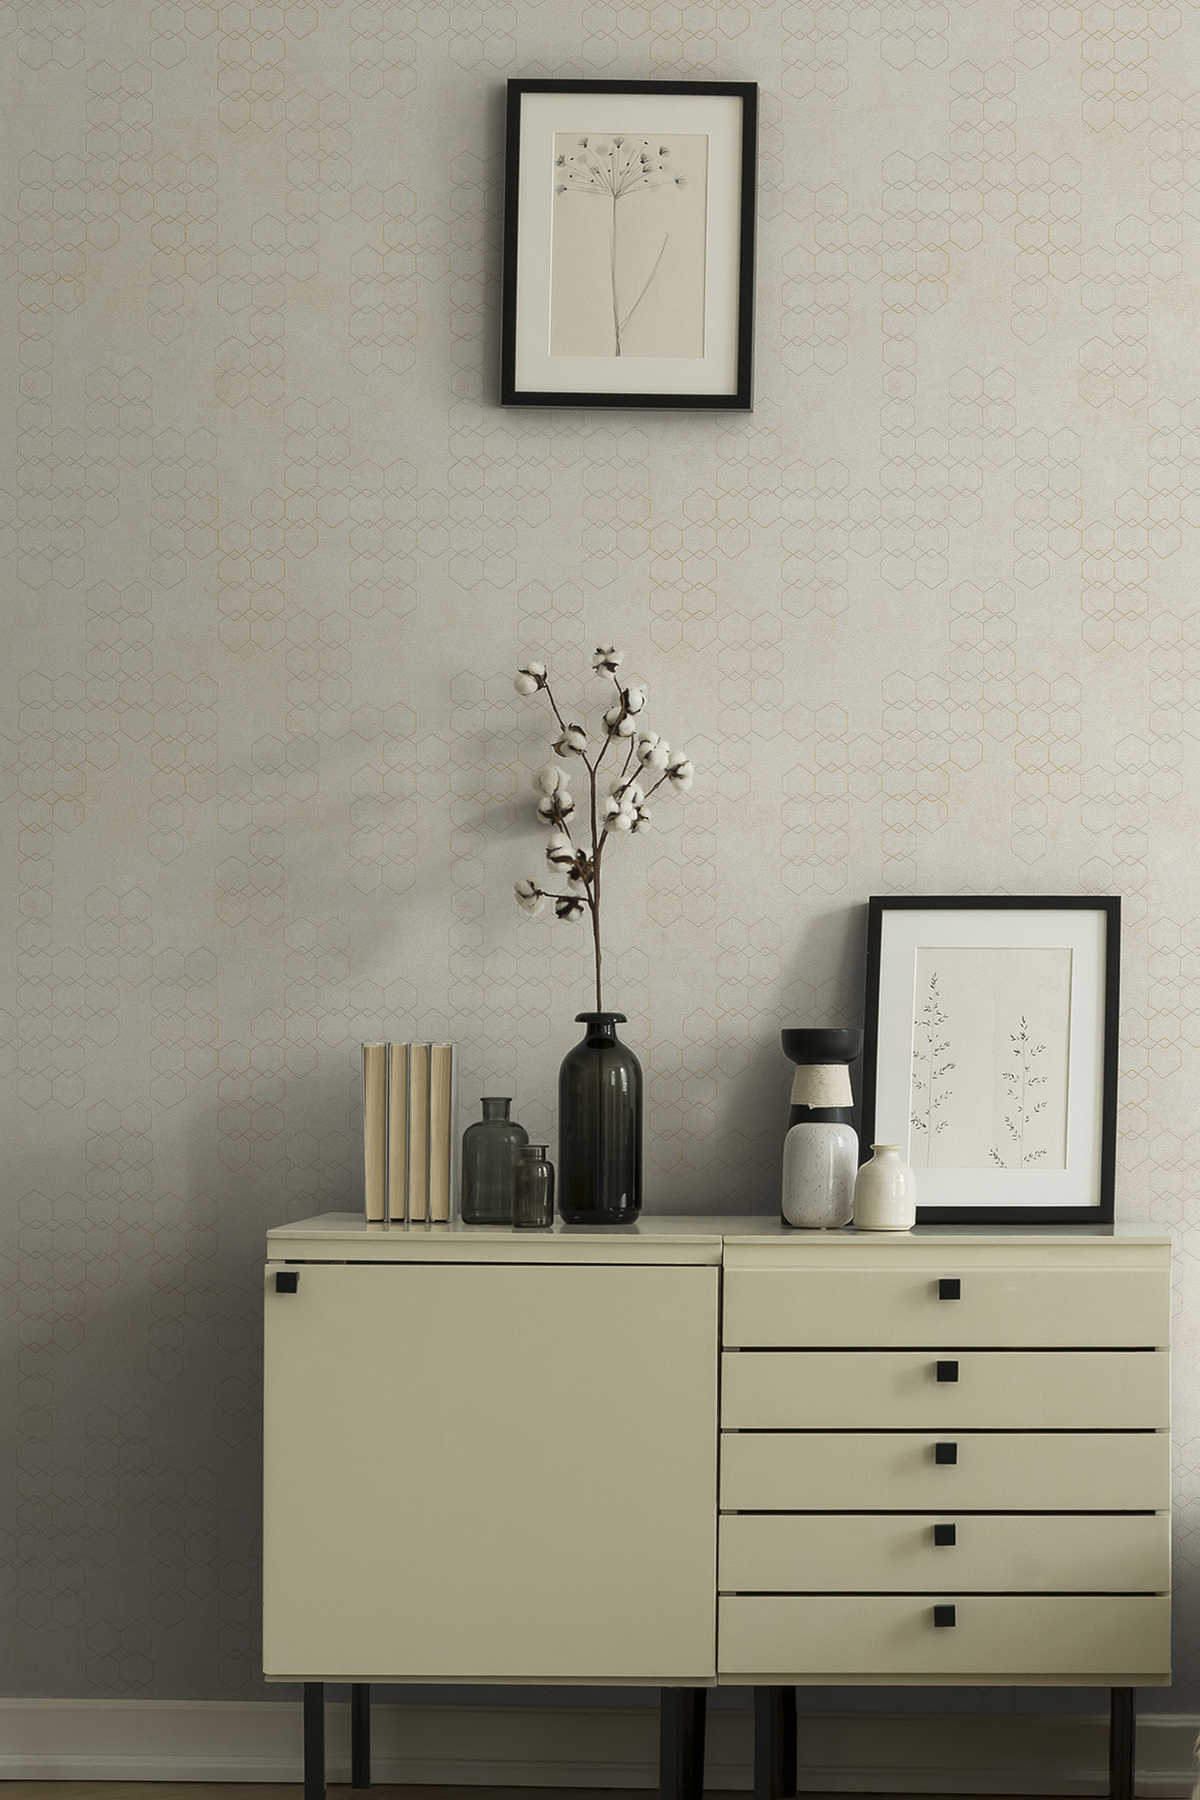             Papier peint à motifs géométriques de style industriel - crème, gris, blanc
        